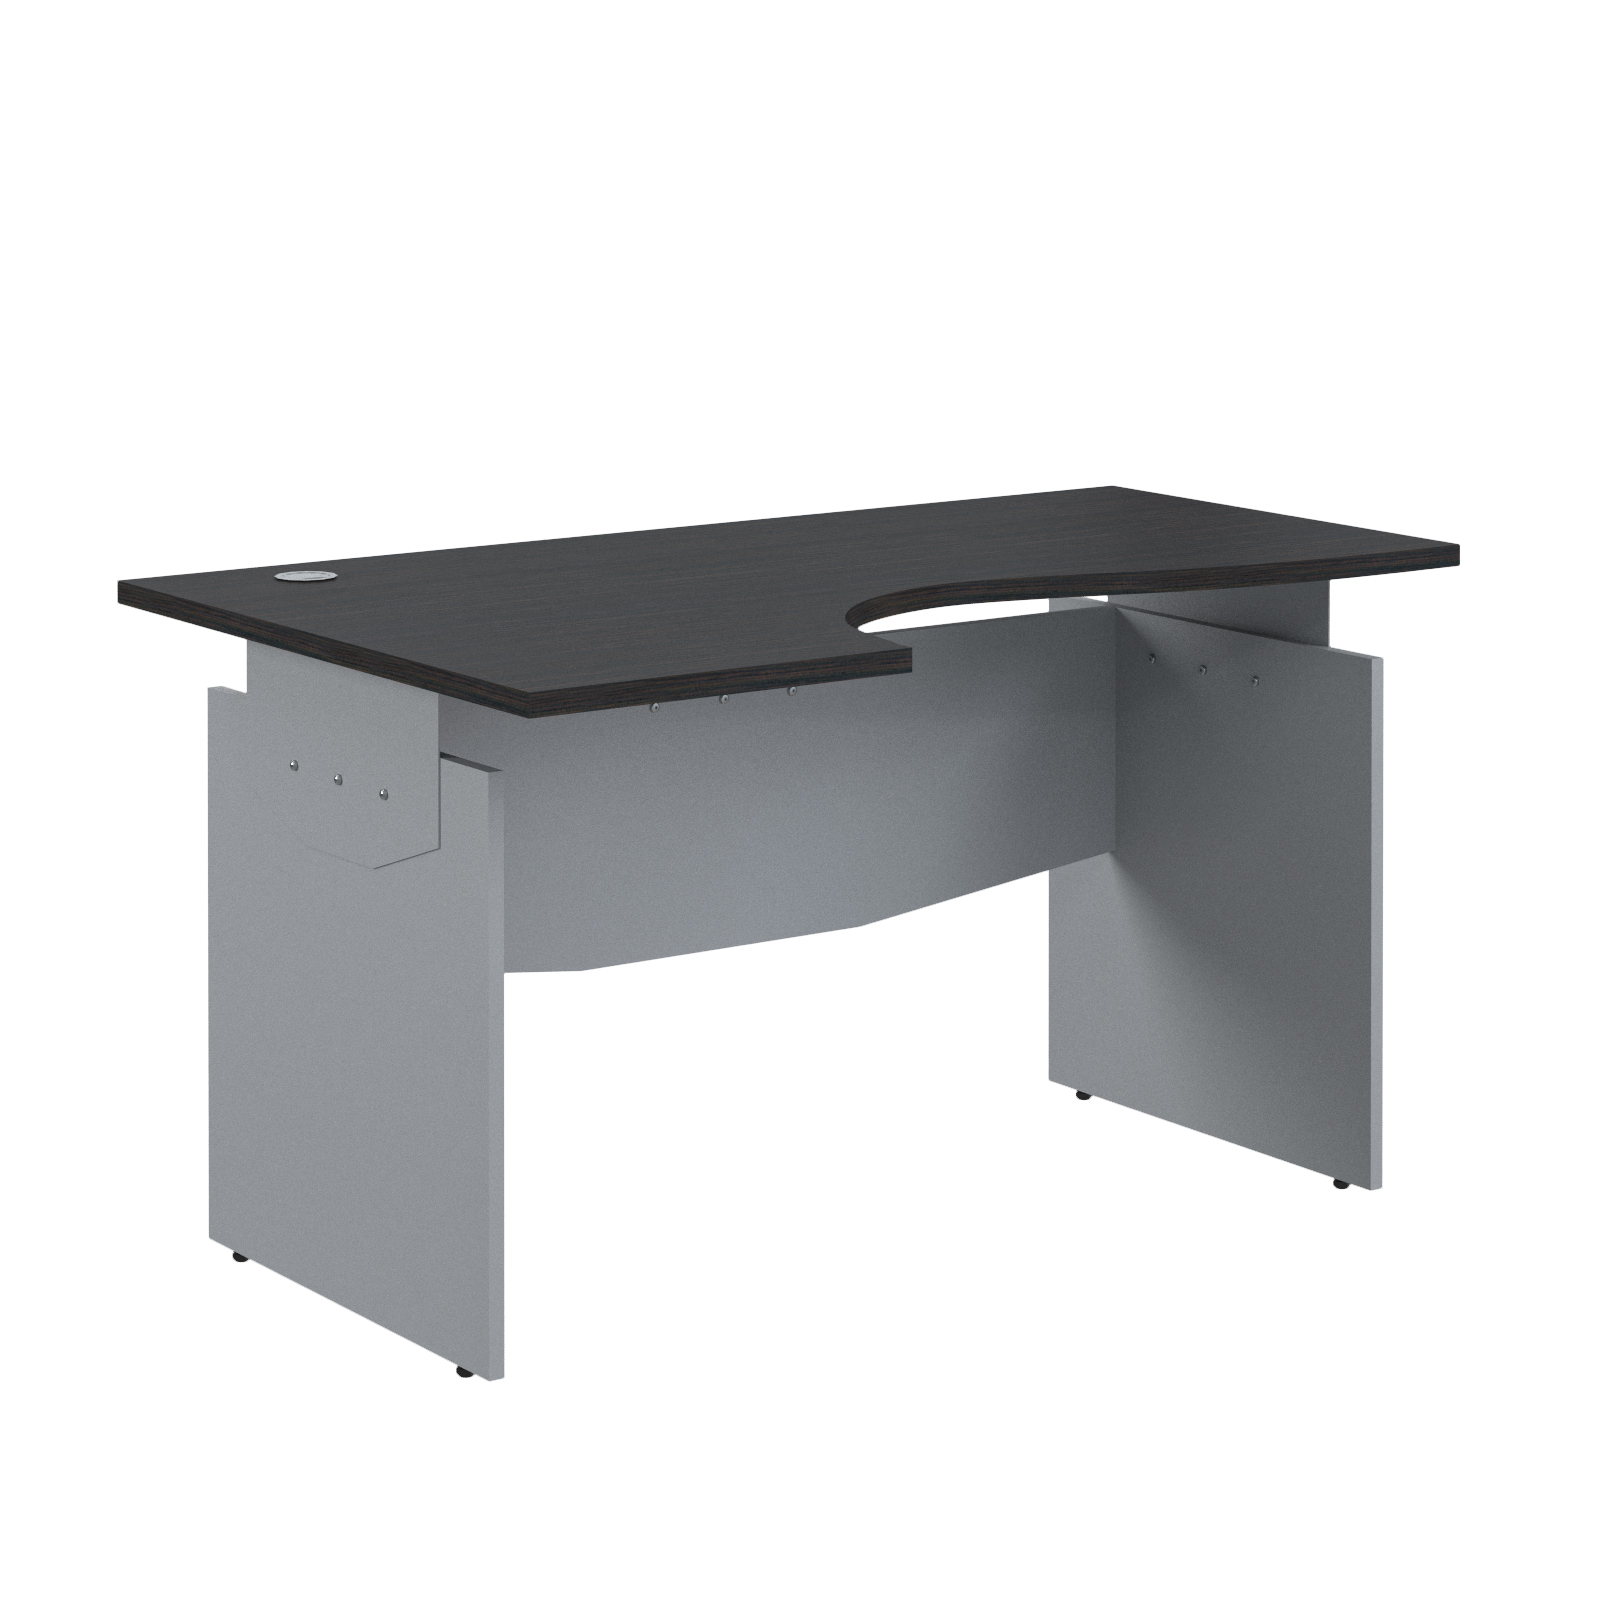 Offix new стол эргономичный 140L